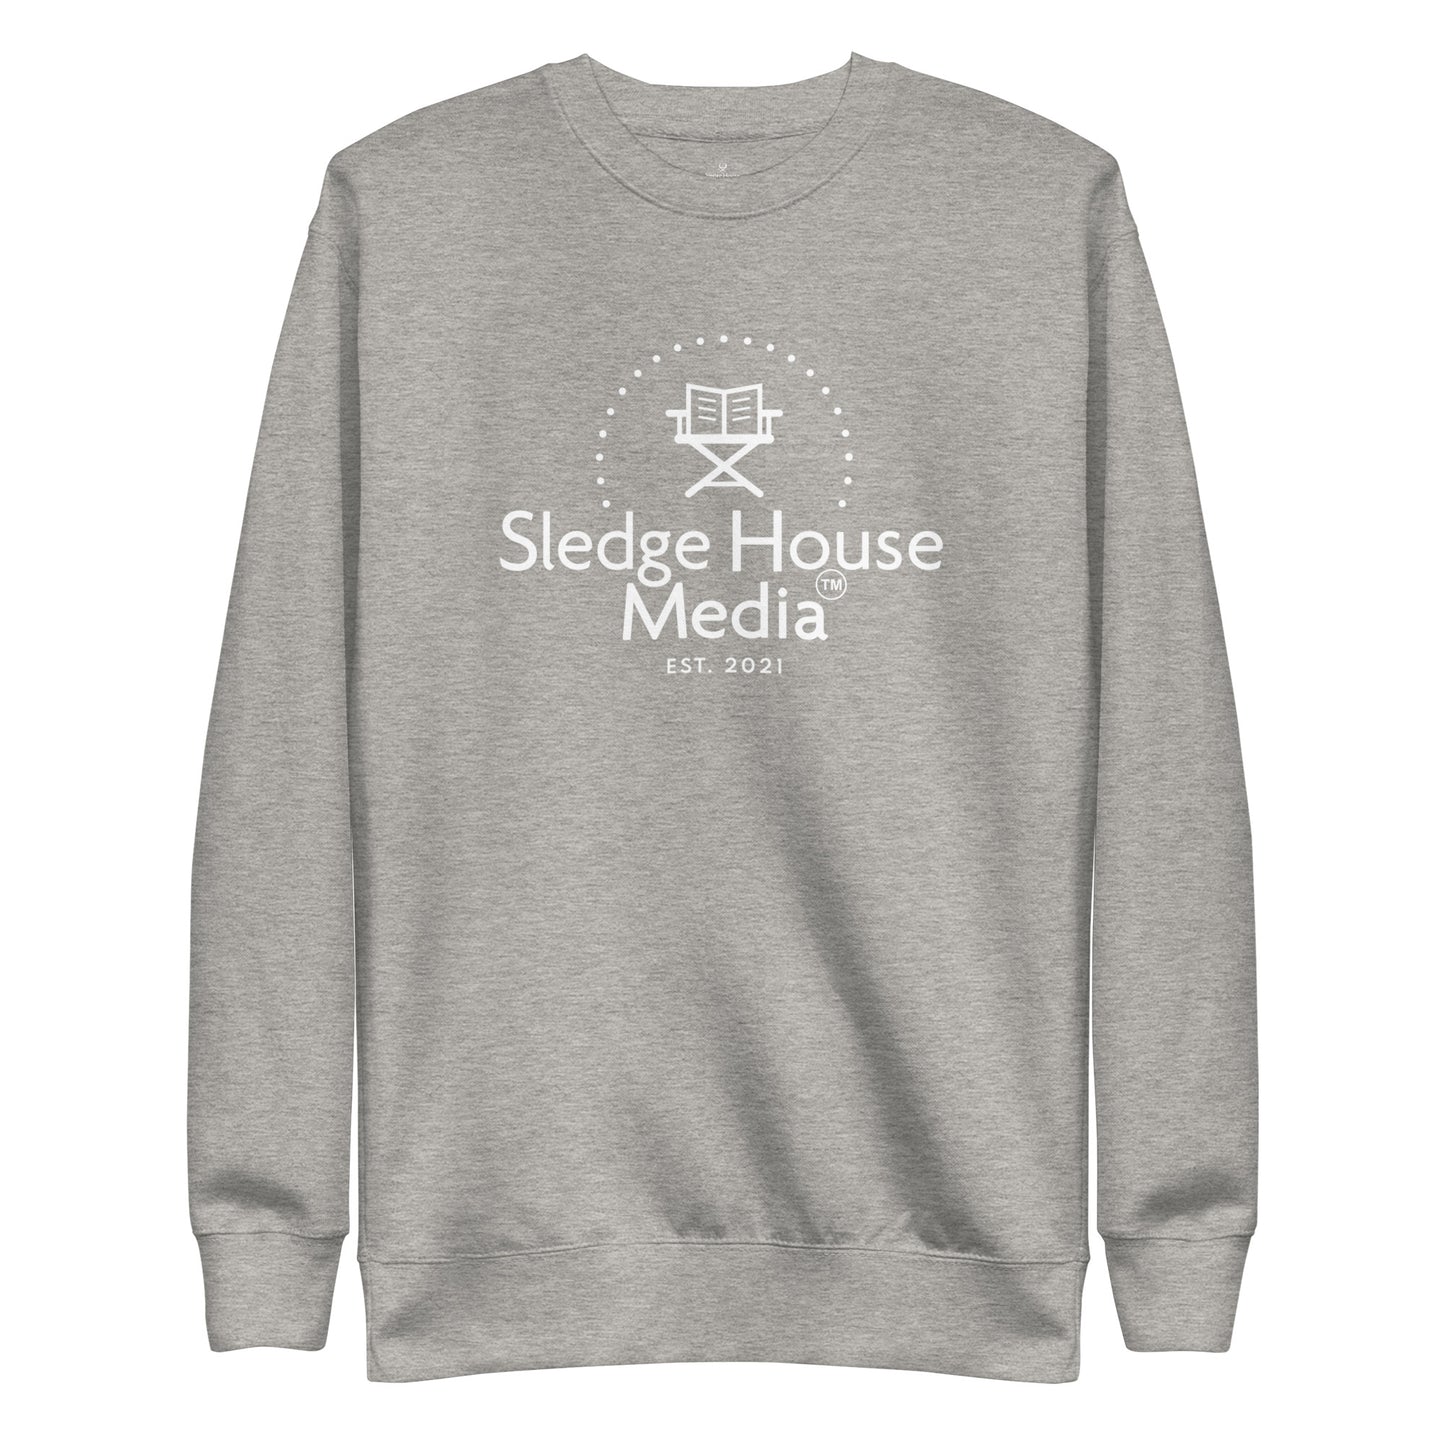 "The OG" Sledge House Media Everyday Cozy Unisex Sweatshirt